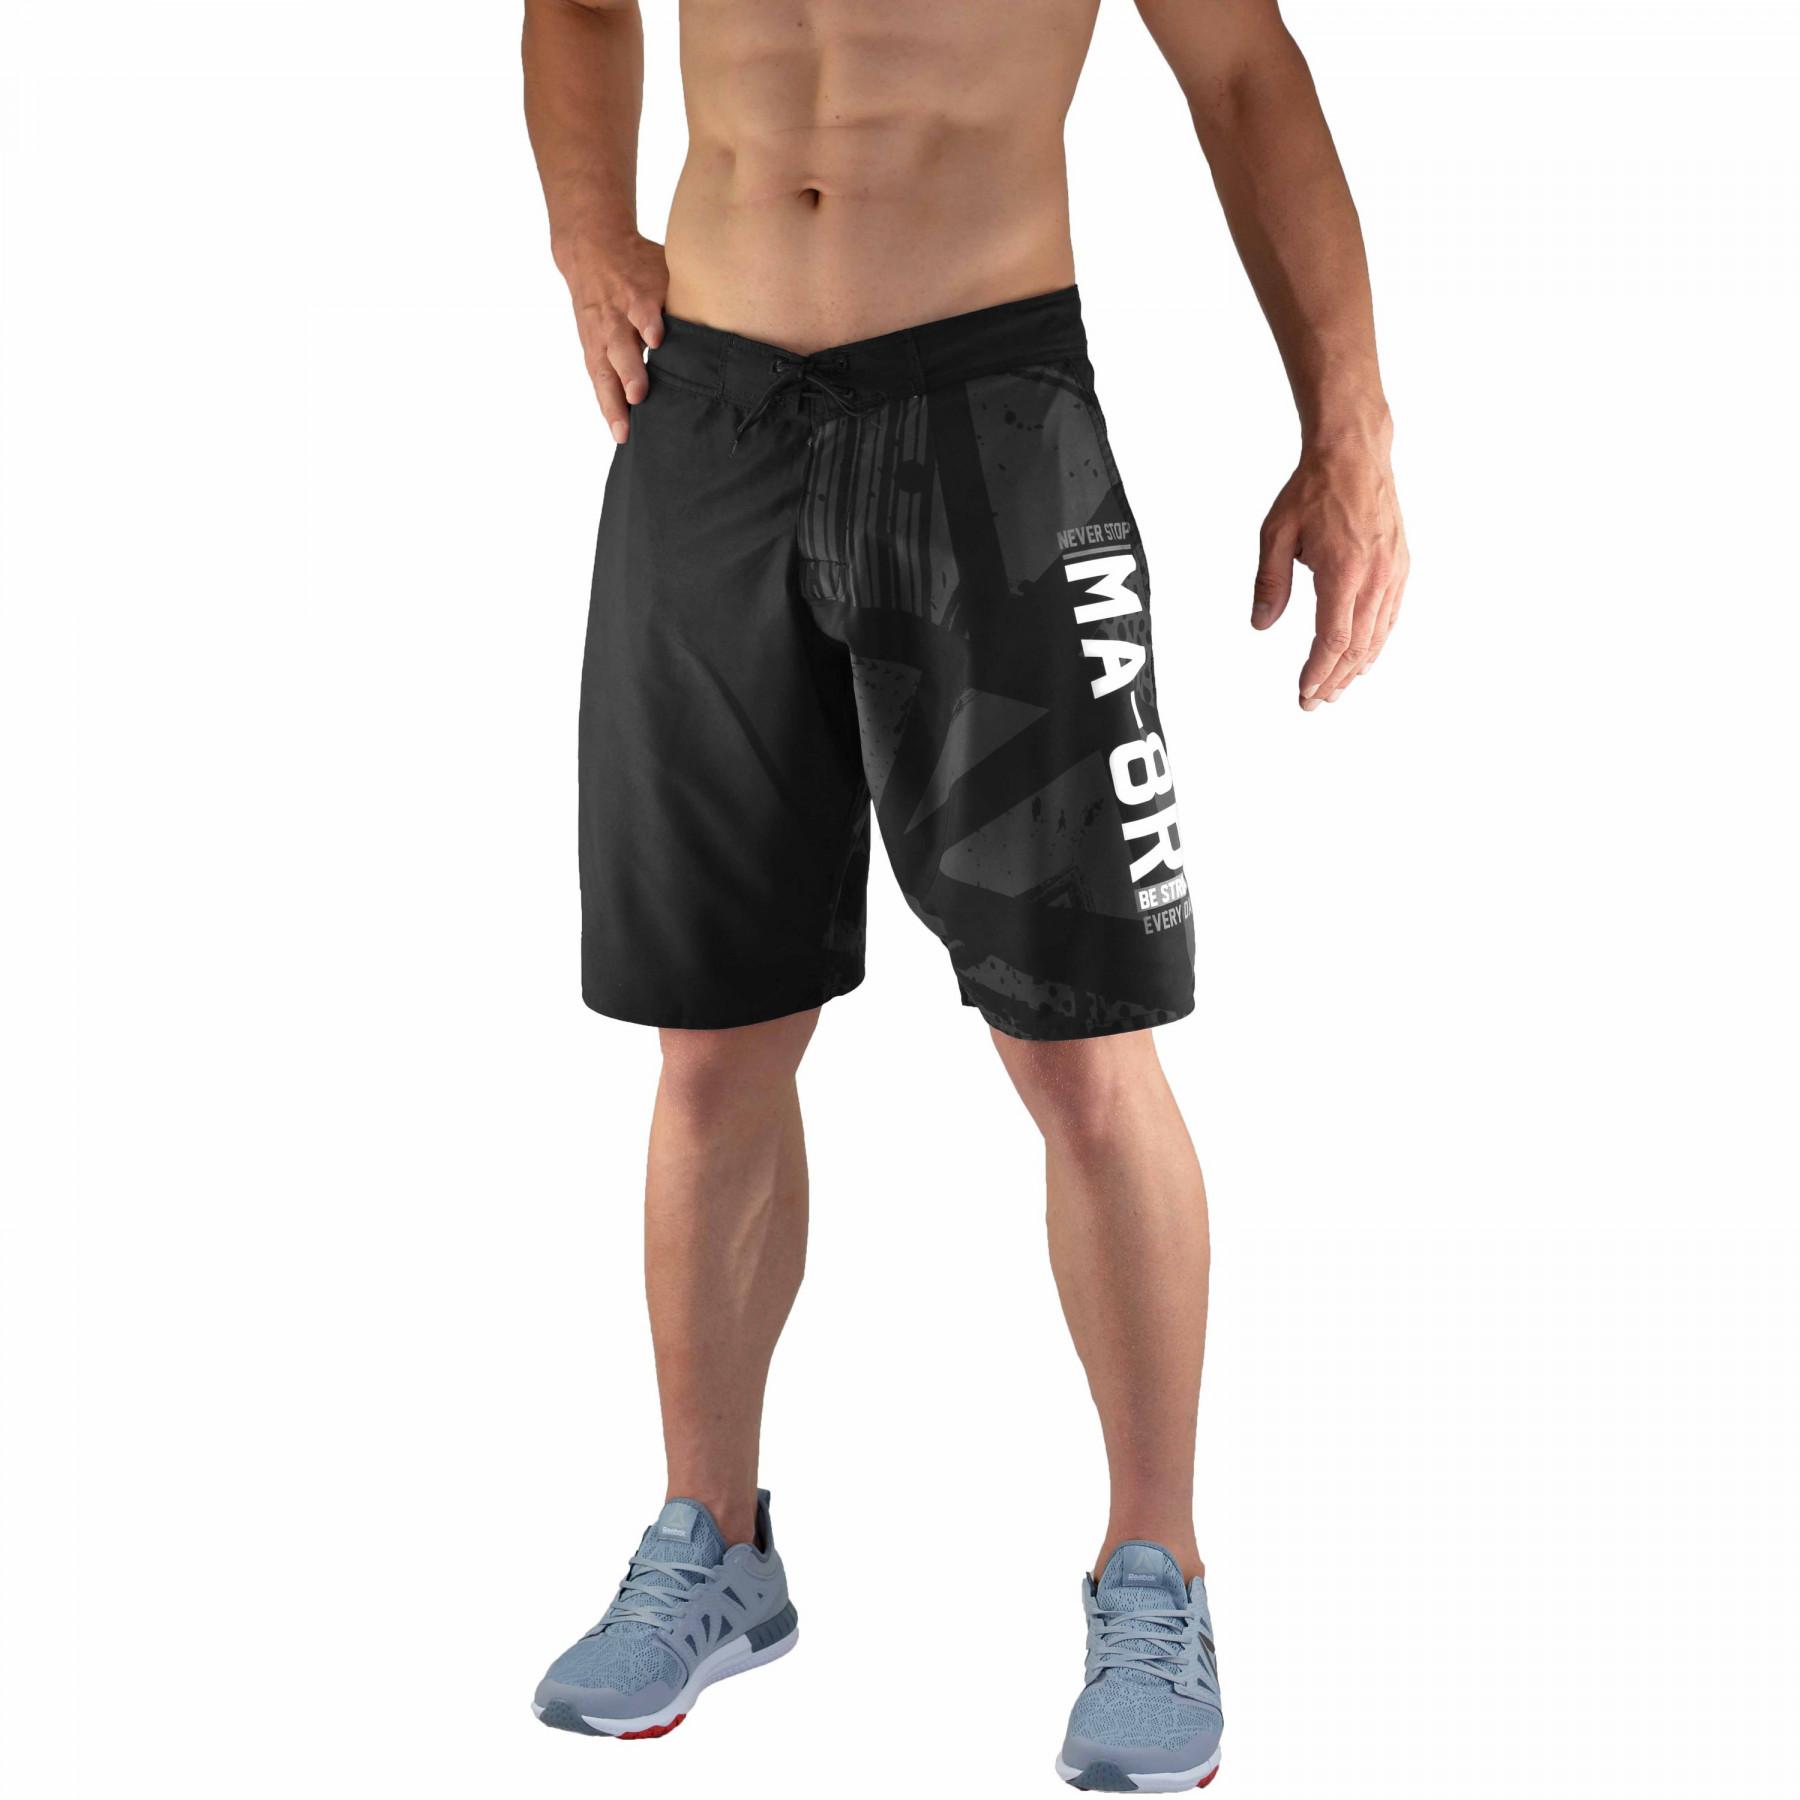 Fitness shorts Bõa MA-8R